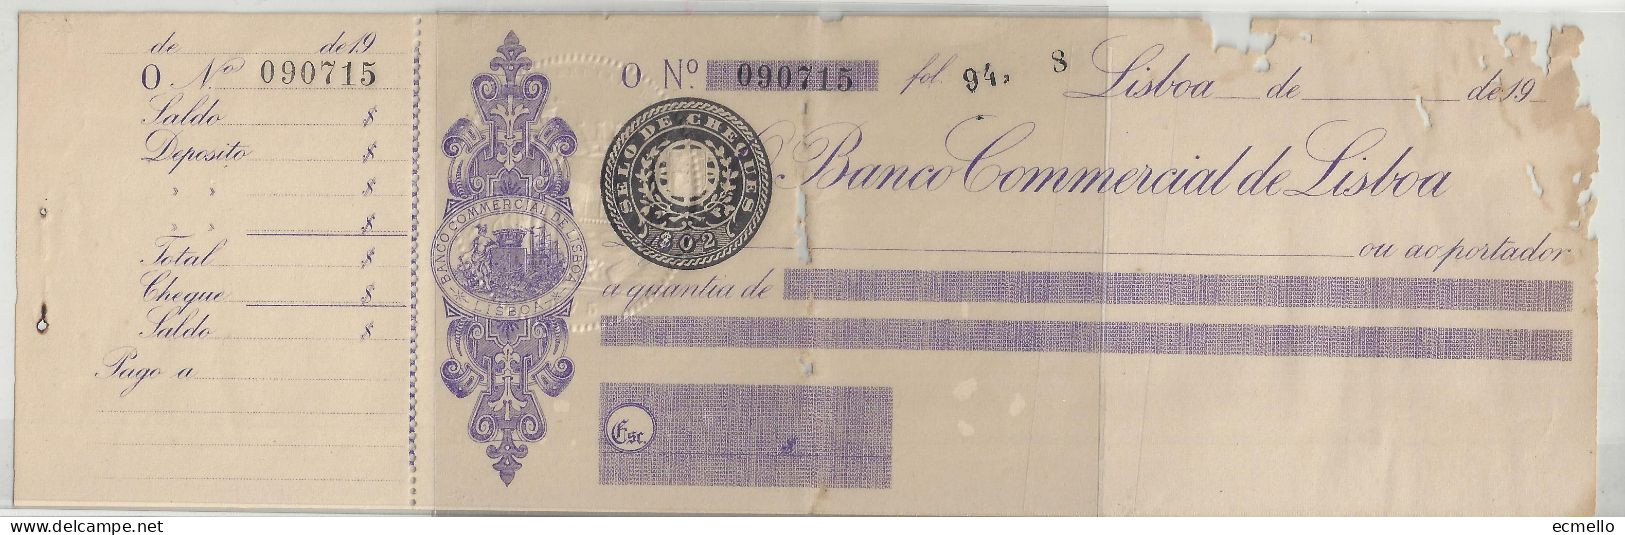 PORTUGAL CHEQUE CHECK BANCO COMERCIAL DE LISBOA 1910'S SCARCE - Chèques & Chèques De Voyage